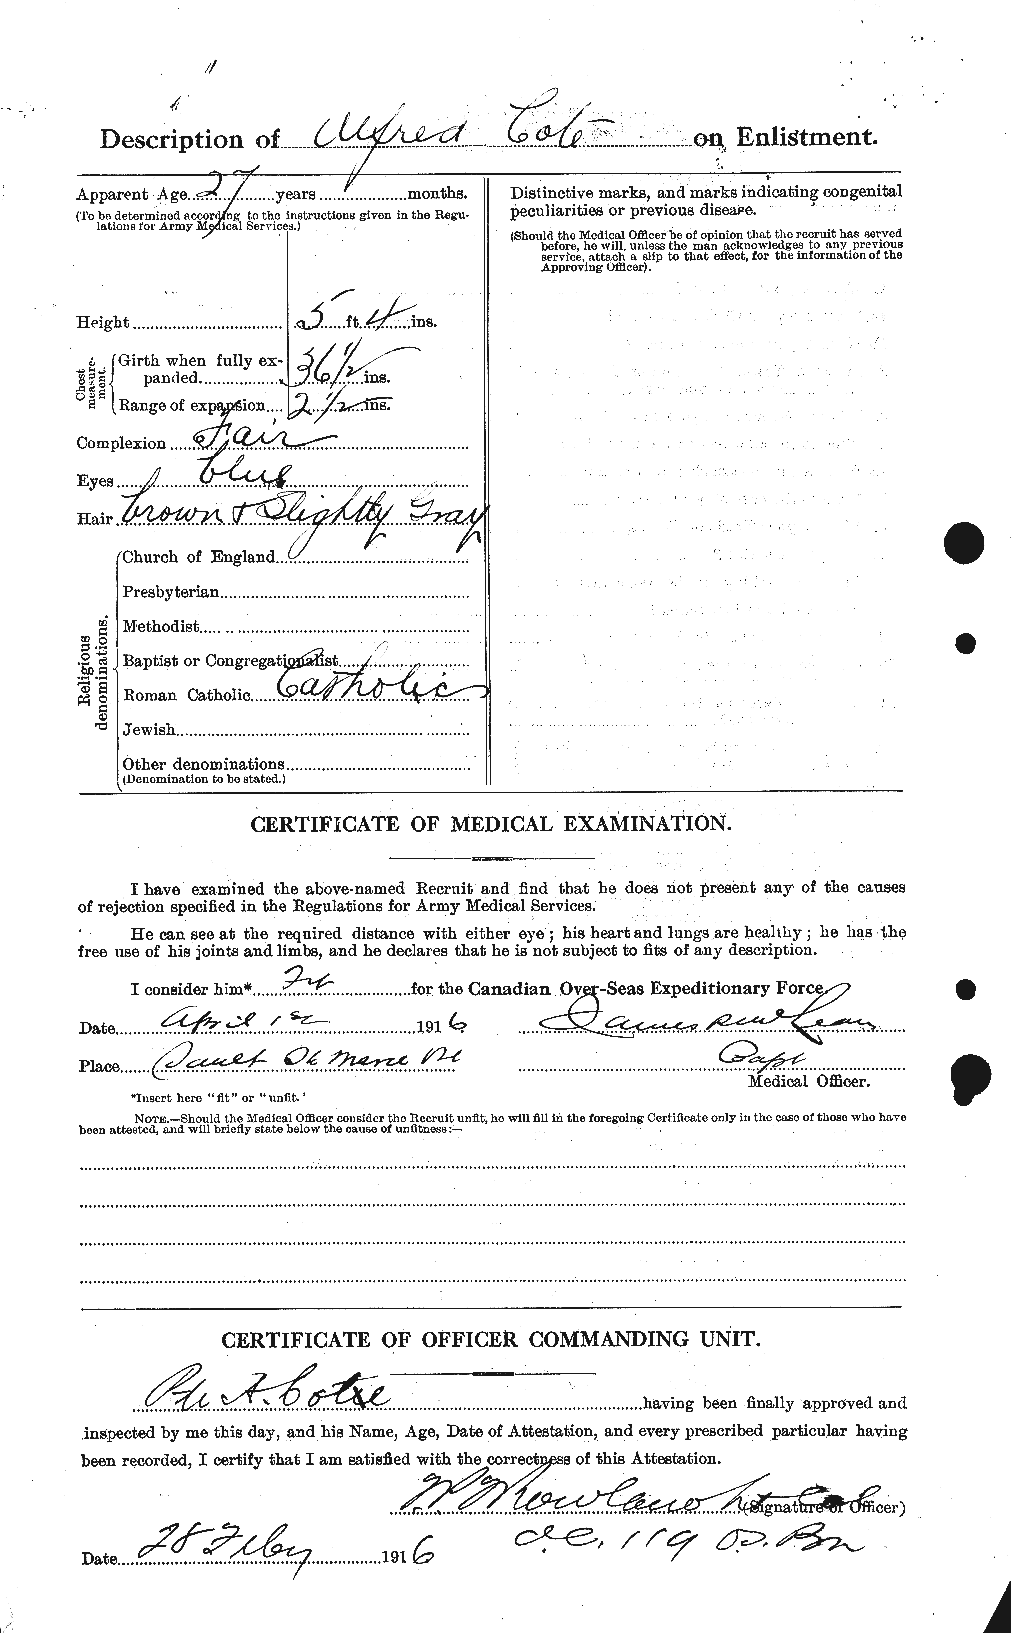 Dossiers du Personnel de la Première Guerre mondiale - CEC 058854b